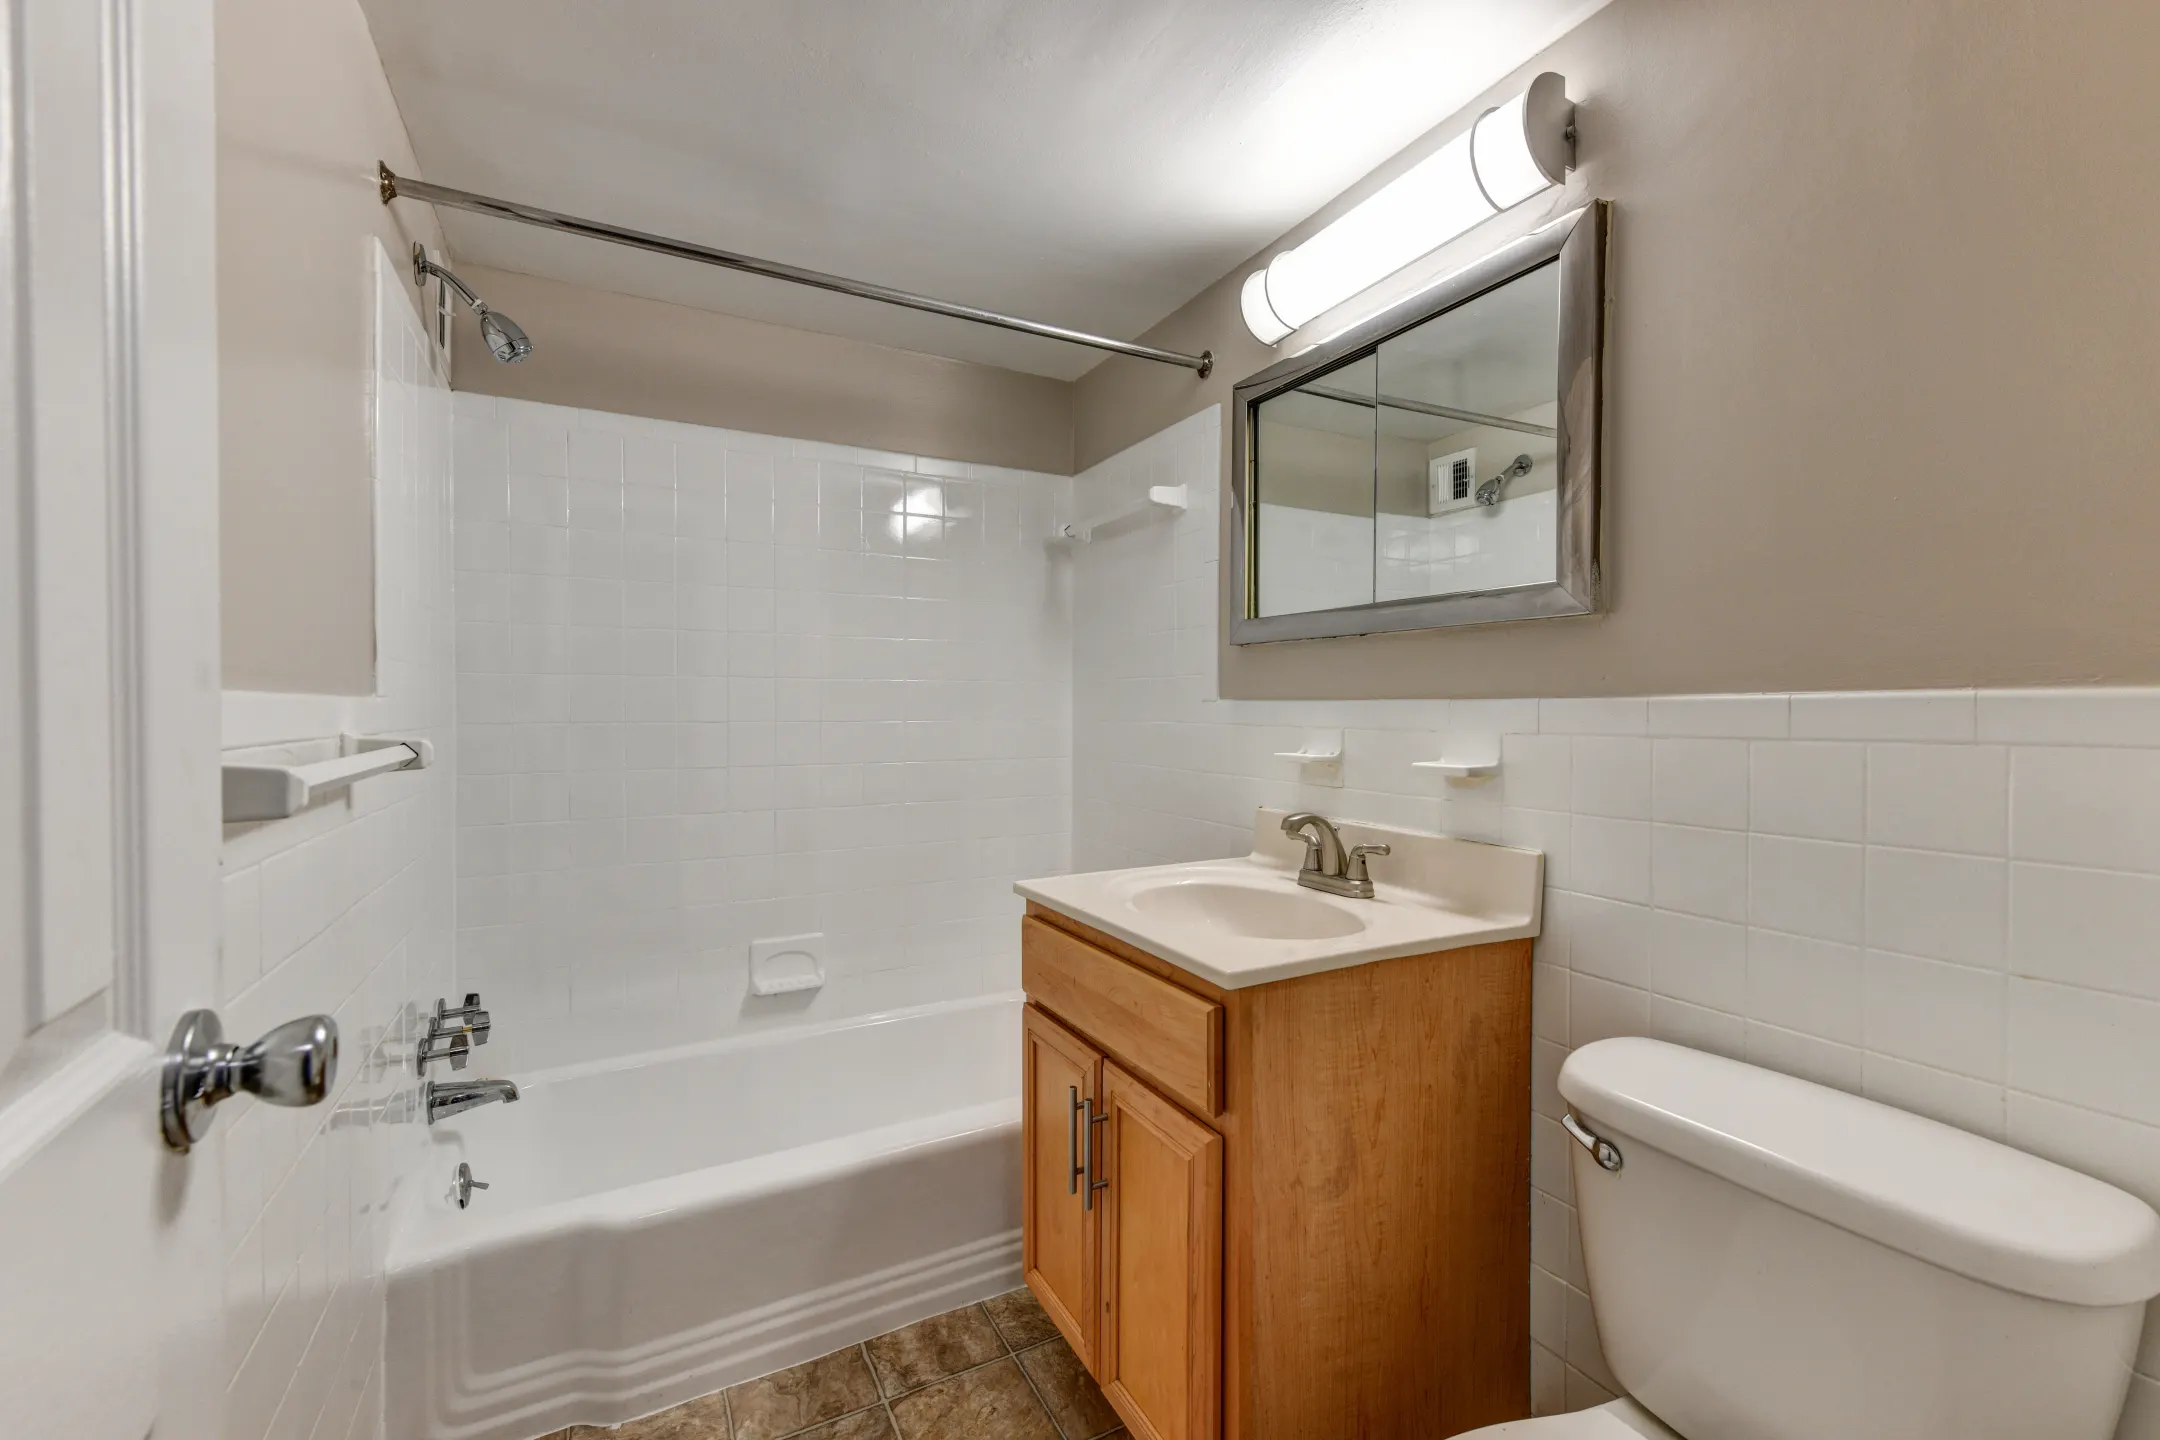 Bathroom - Steward Tower - Laurel, MD